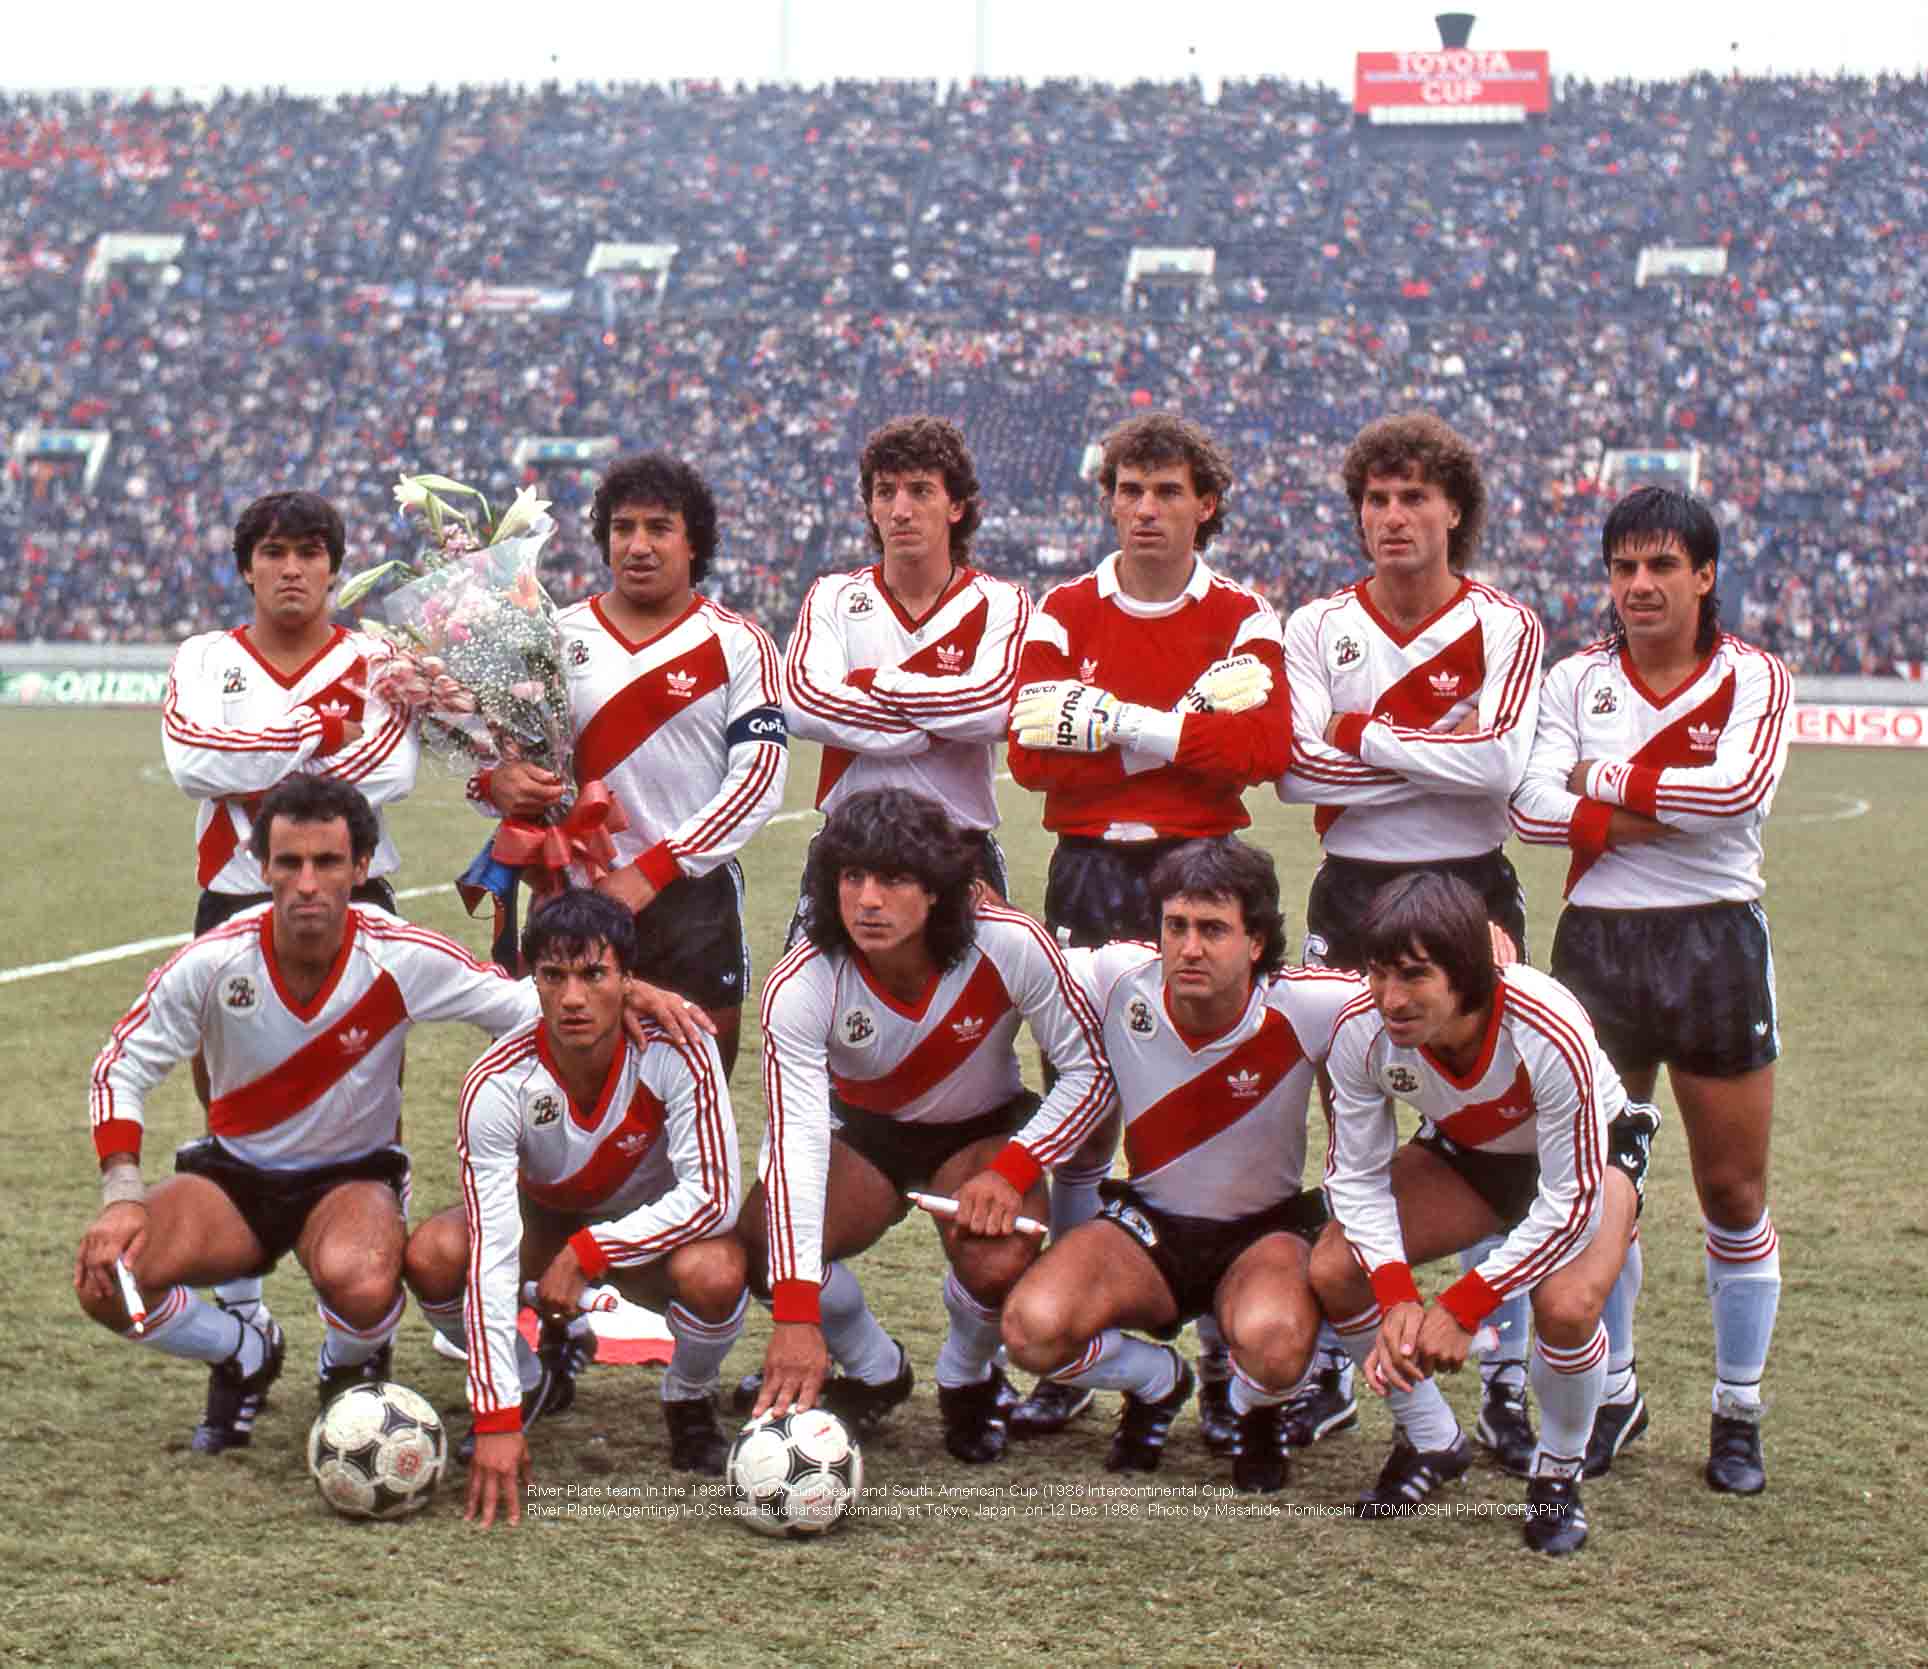 River Plate 1 x 0 Steaua Bucuresti ○ 1986 Intercontinental Cup Final  Extended Goals & Highlights HD 